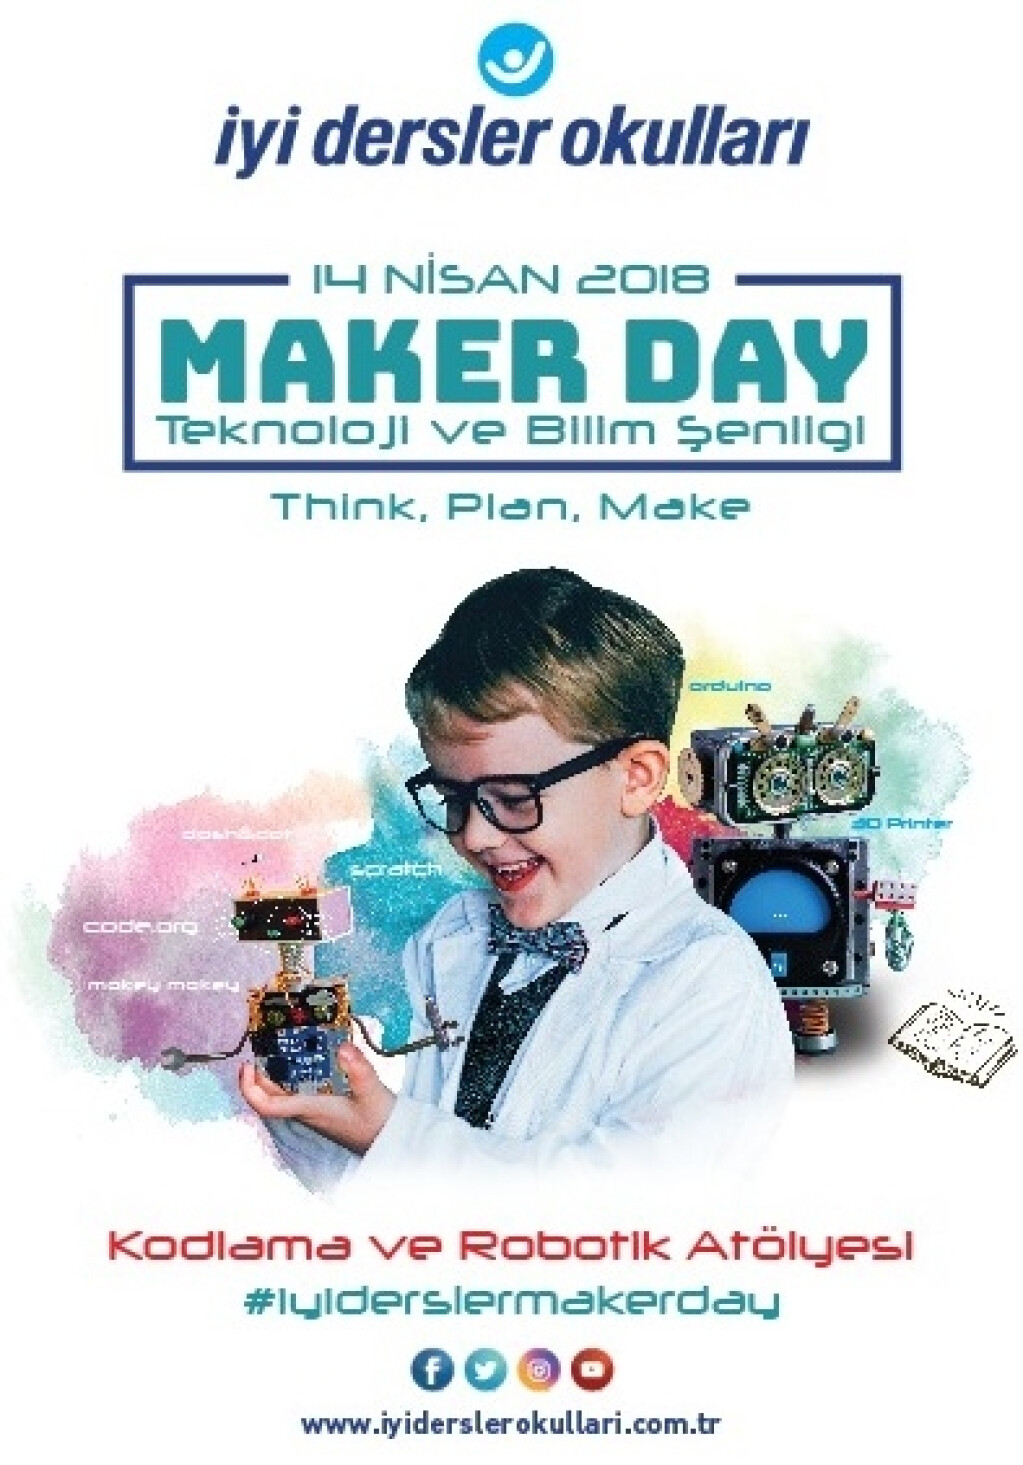 Maker Day / Teknoloji ve Bilim Şenliği | İyi Dersler | Özel Okul